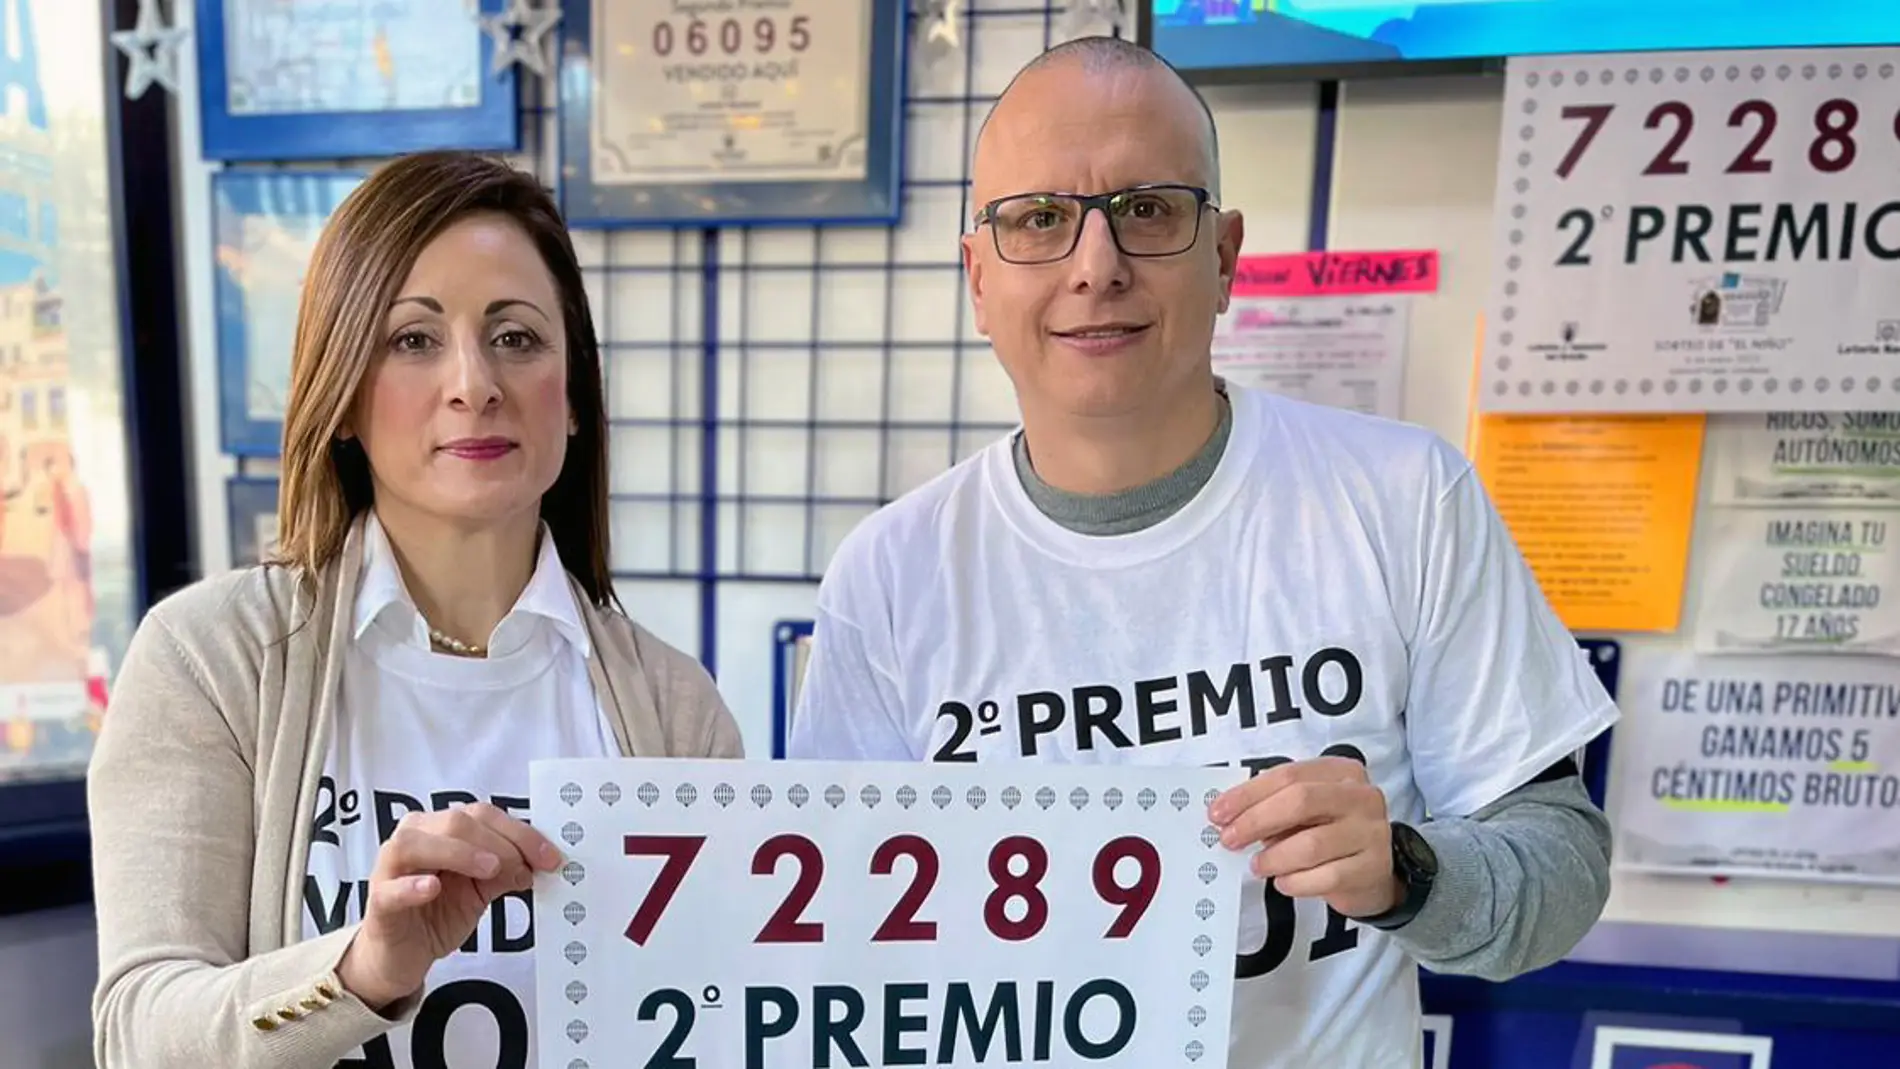 Gerentes de la administración de lotería número 4 de Crevillent con el cartel acreditativo de la venta del segundo premio.